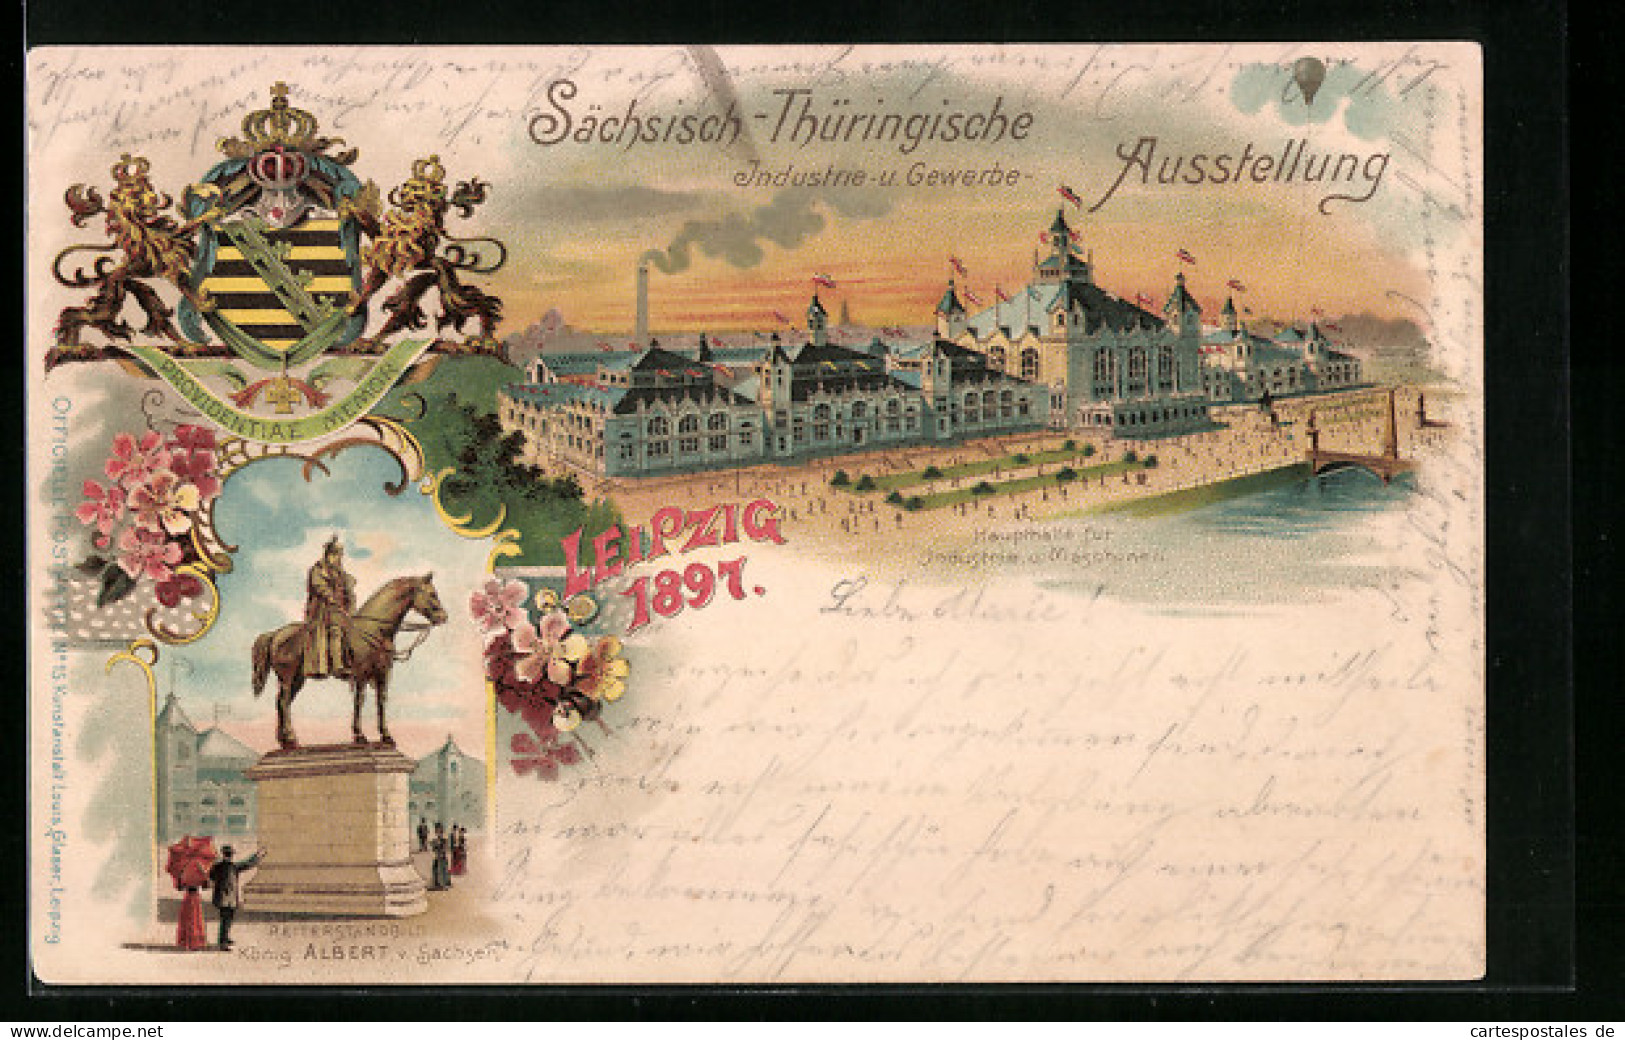 Lithographie Leipzig, Sächsisch-Thüringische Industrie & Gewerbe Ausstellung 1897, Haupthalle Für Industrie U. Masc  - Exhibitions